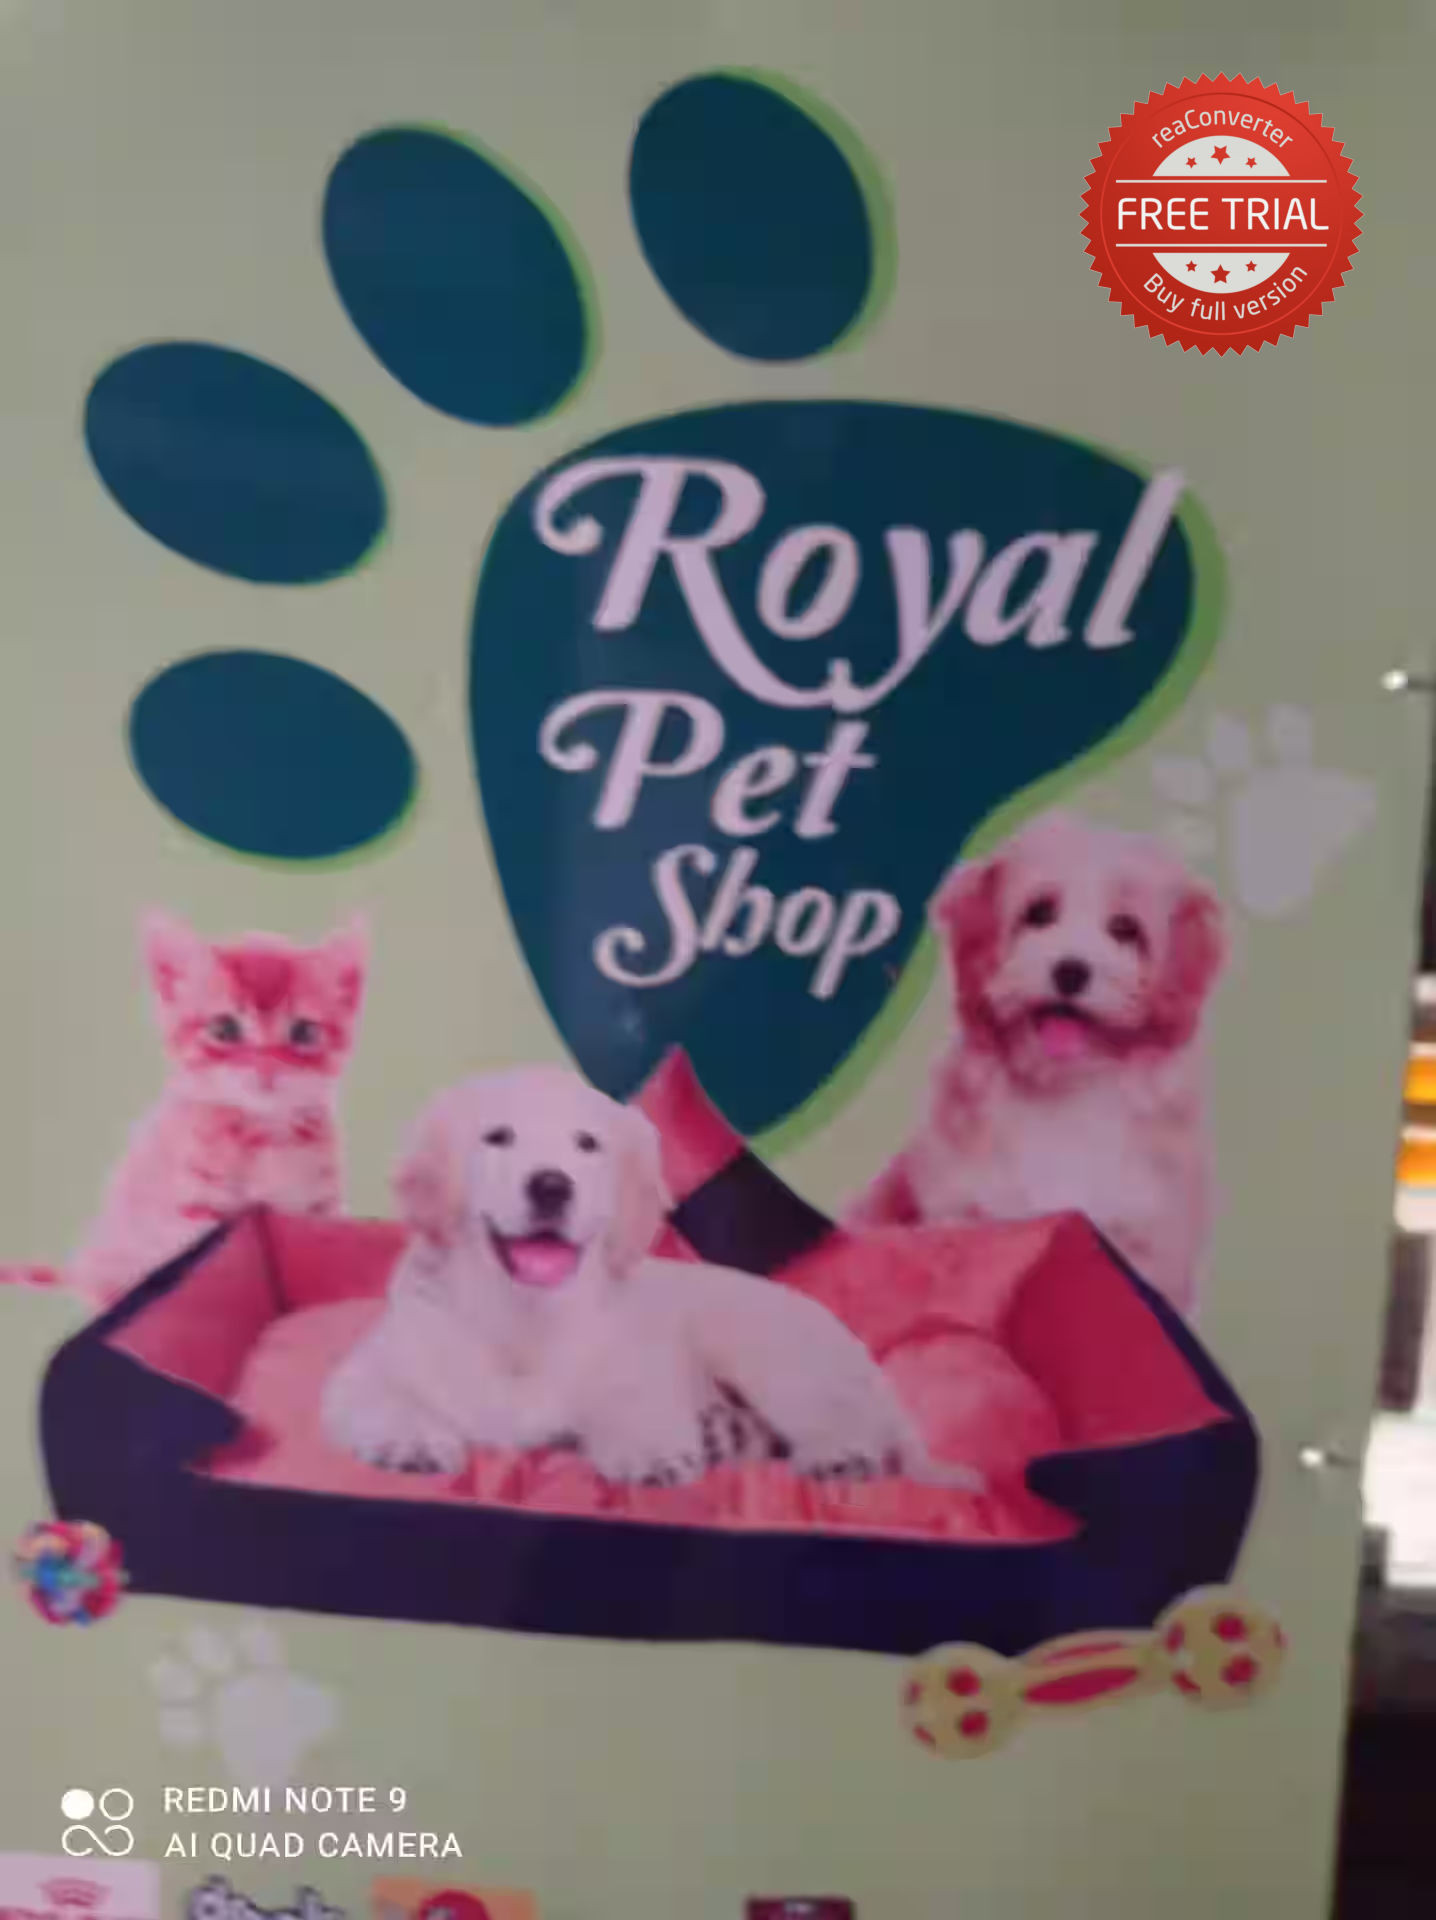 Royal Pet Shoppe